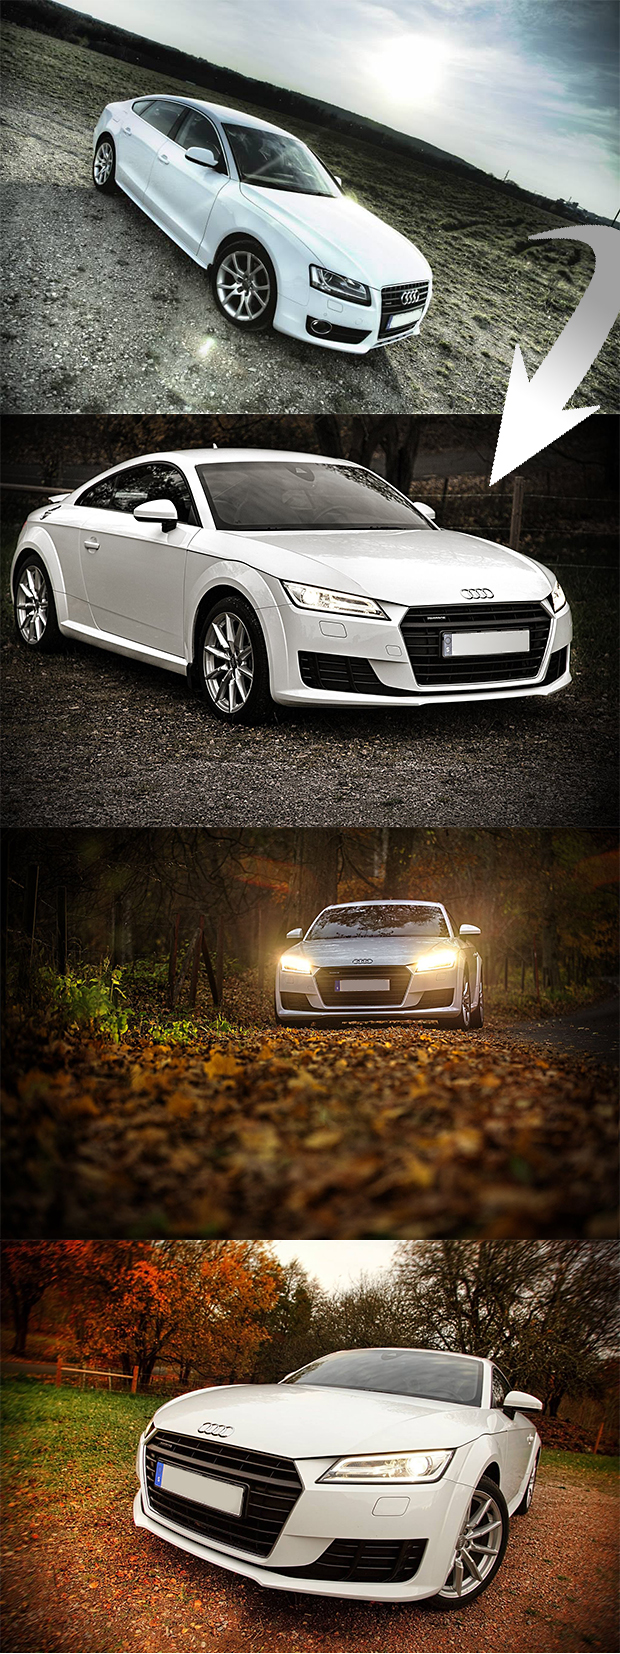 Från Audi till ny Audi